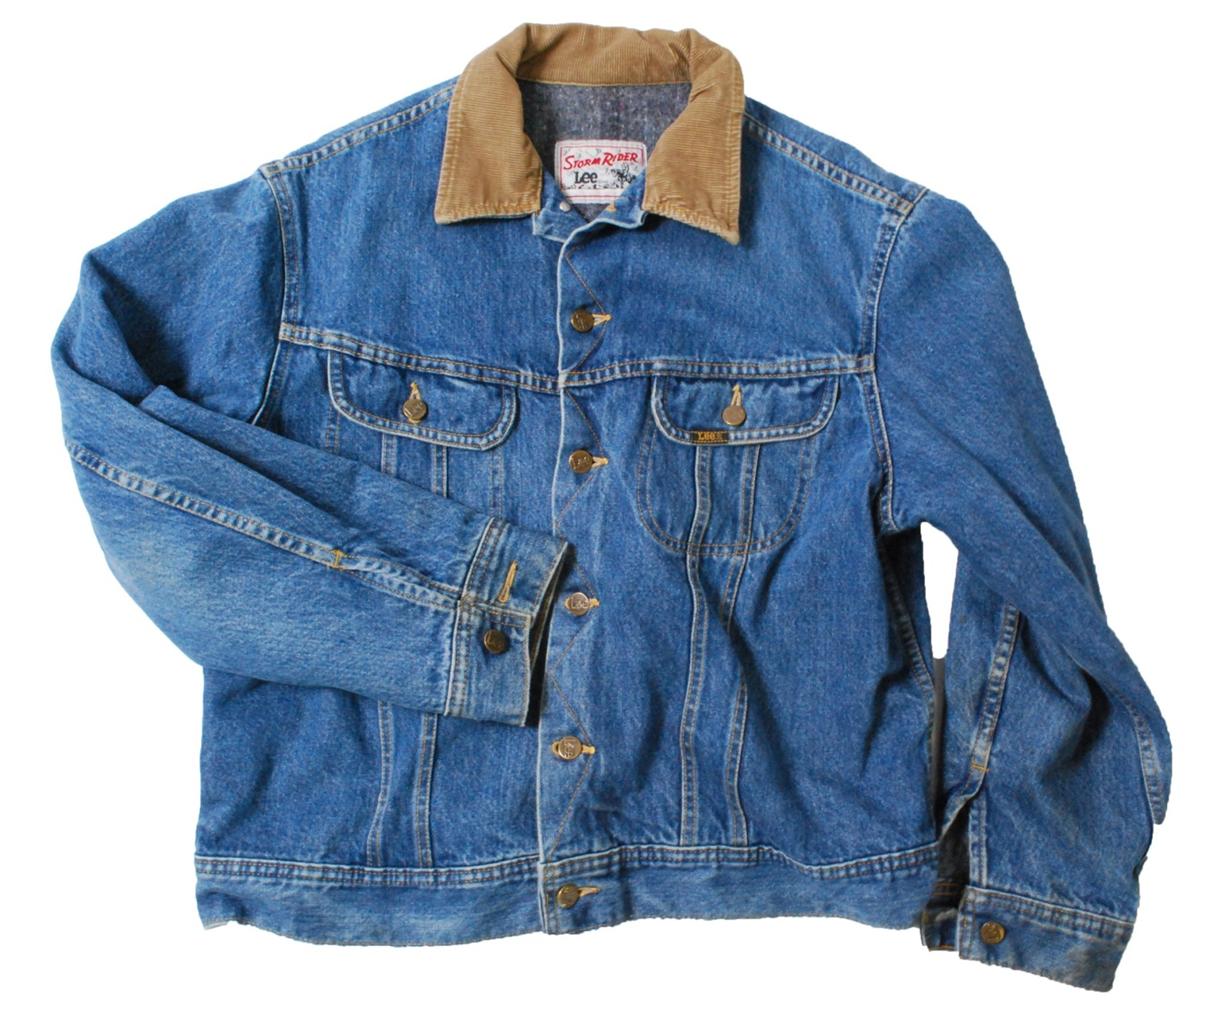 Vintage Lee Storm Rider blanket lined denim trucker jacket - Large L | eBay